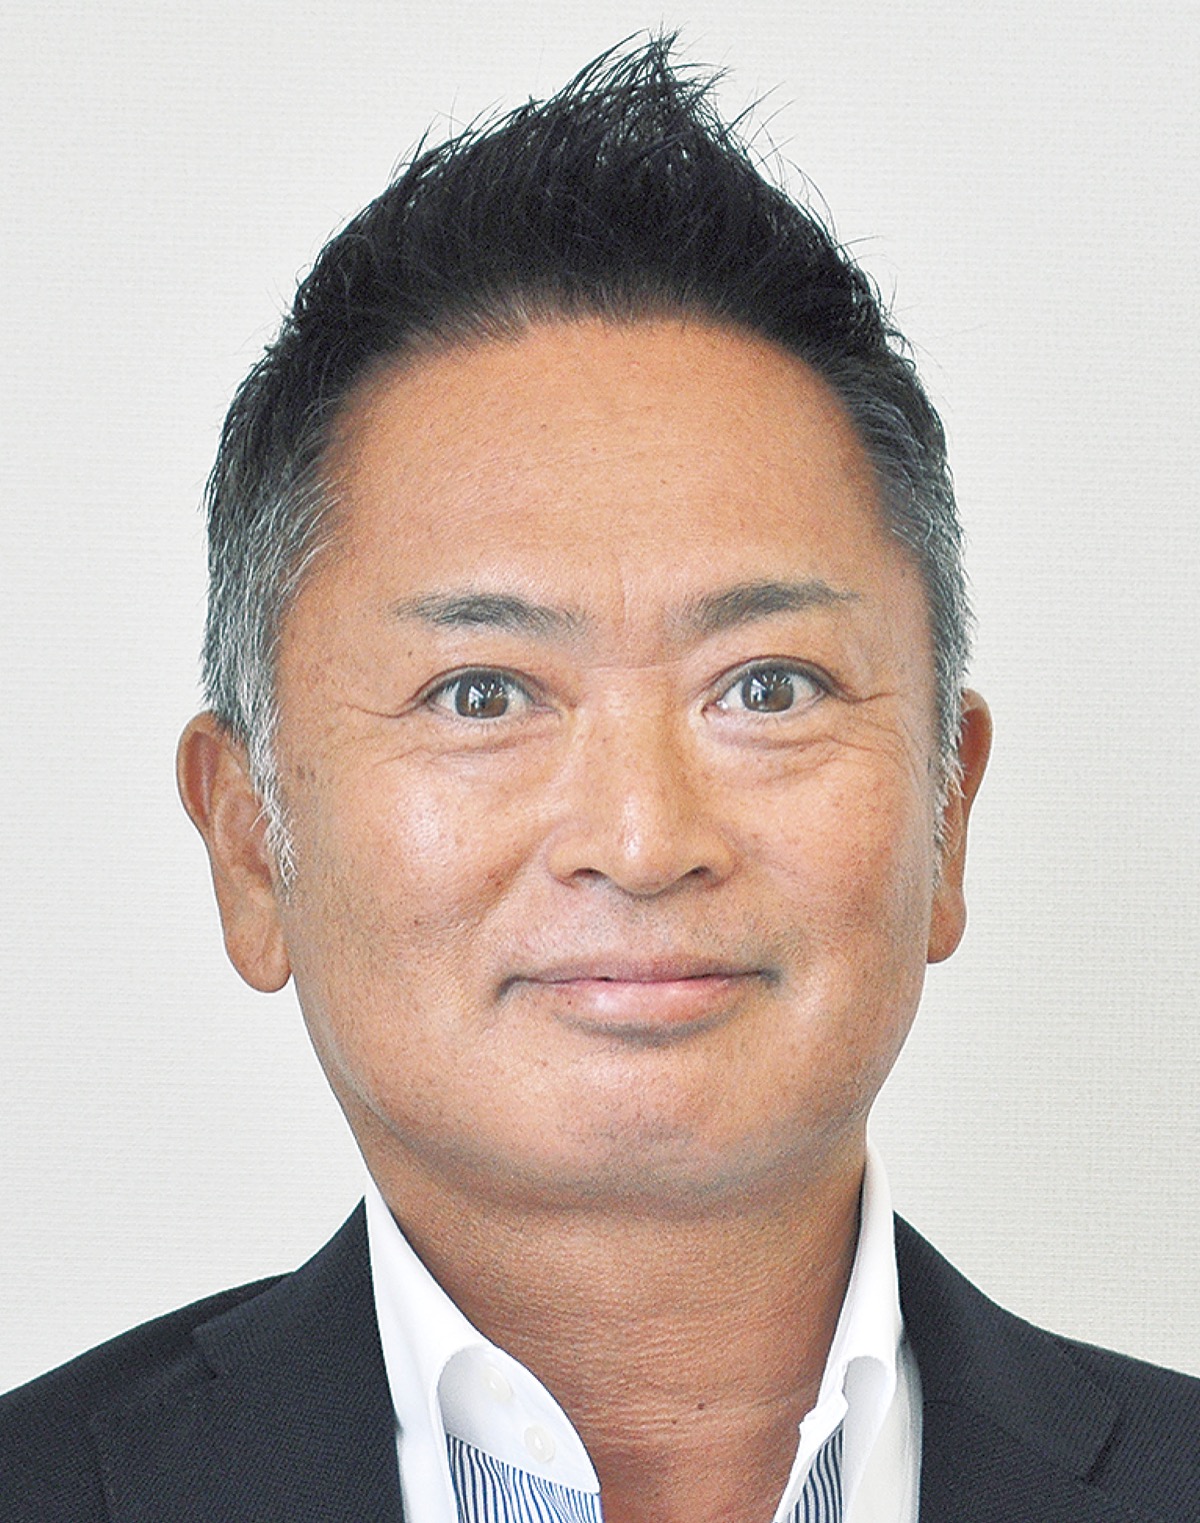 横浜銀行の理事・小田原支店長を務める 山本 博文さん 小田原市出身　55歳